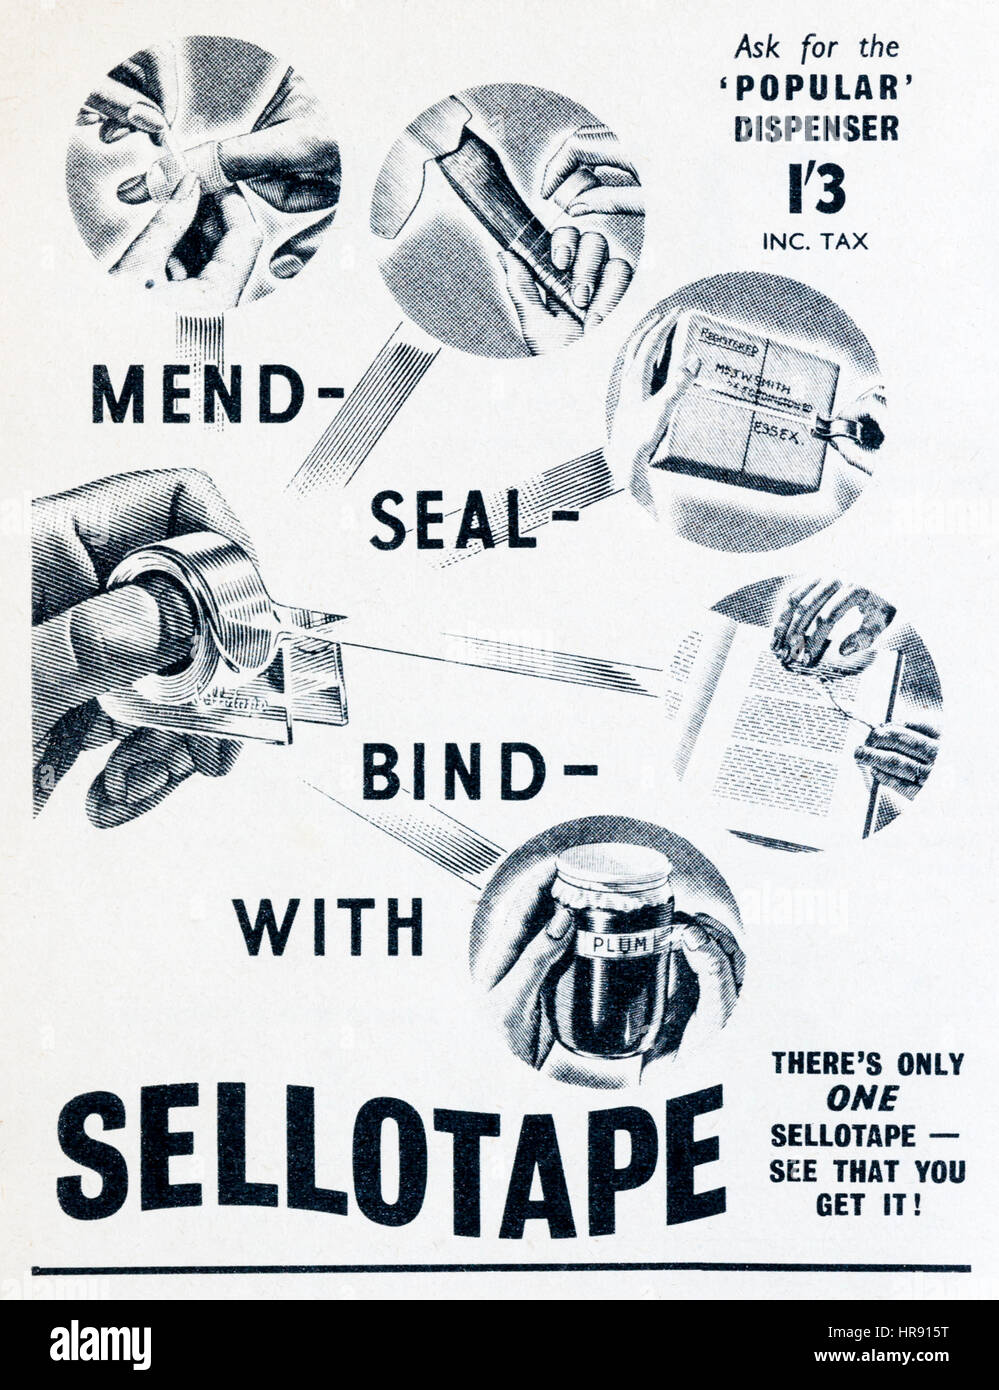 1950 Anuncio para la revista Sellotape cinta adhesiva en el popular dispensador. Foto de stock